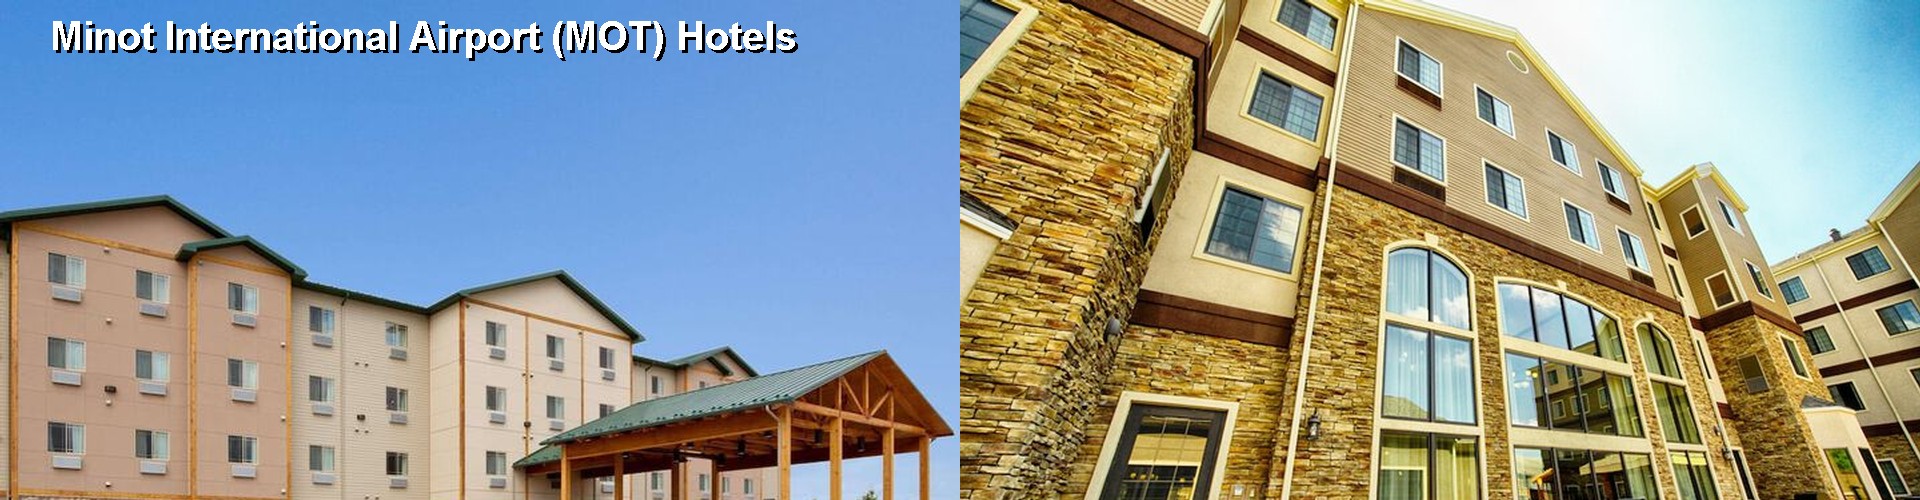 5 Best Hotels near Minot International Airport (MOT)